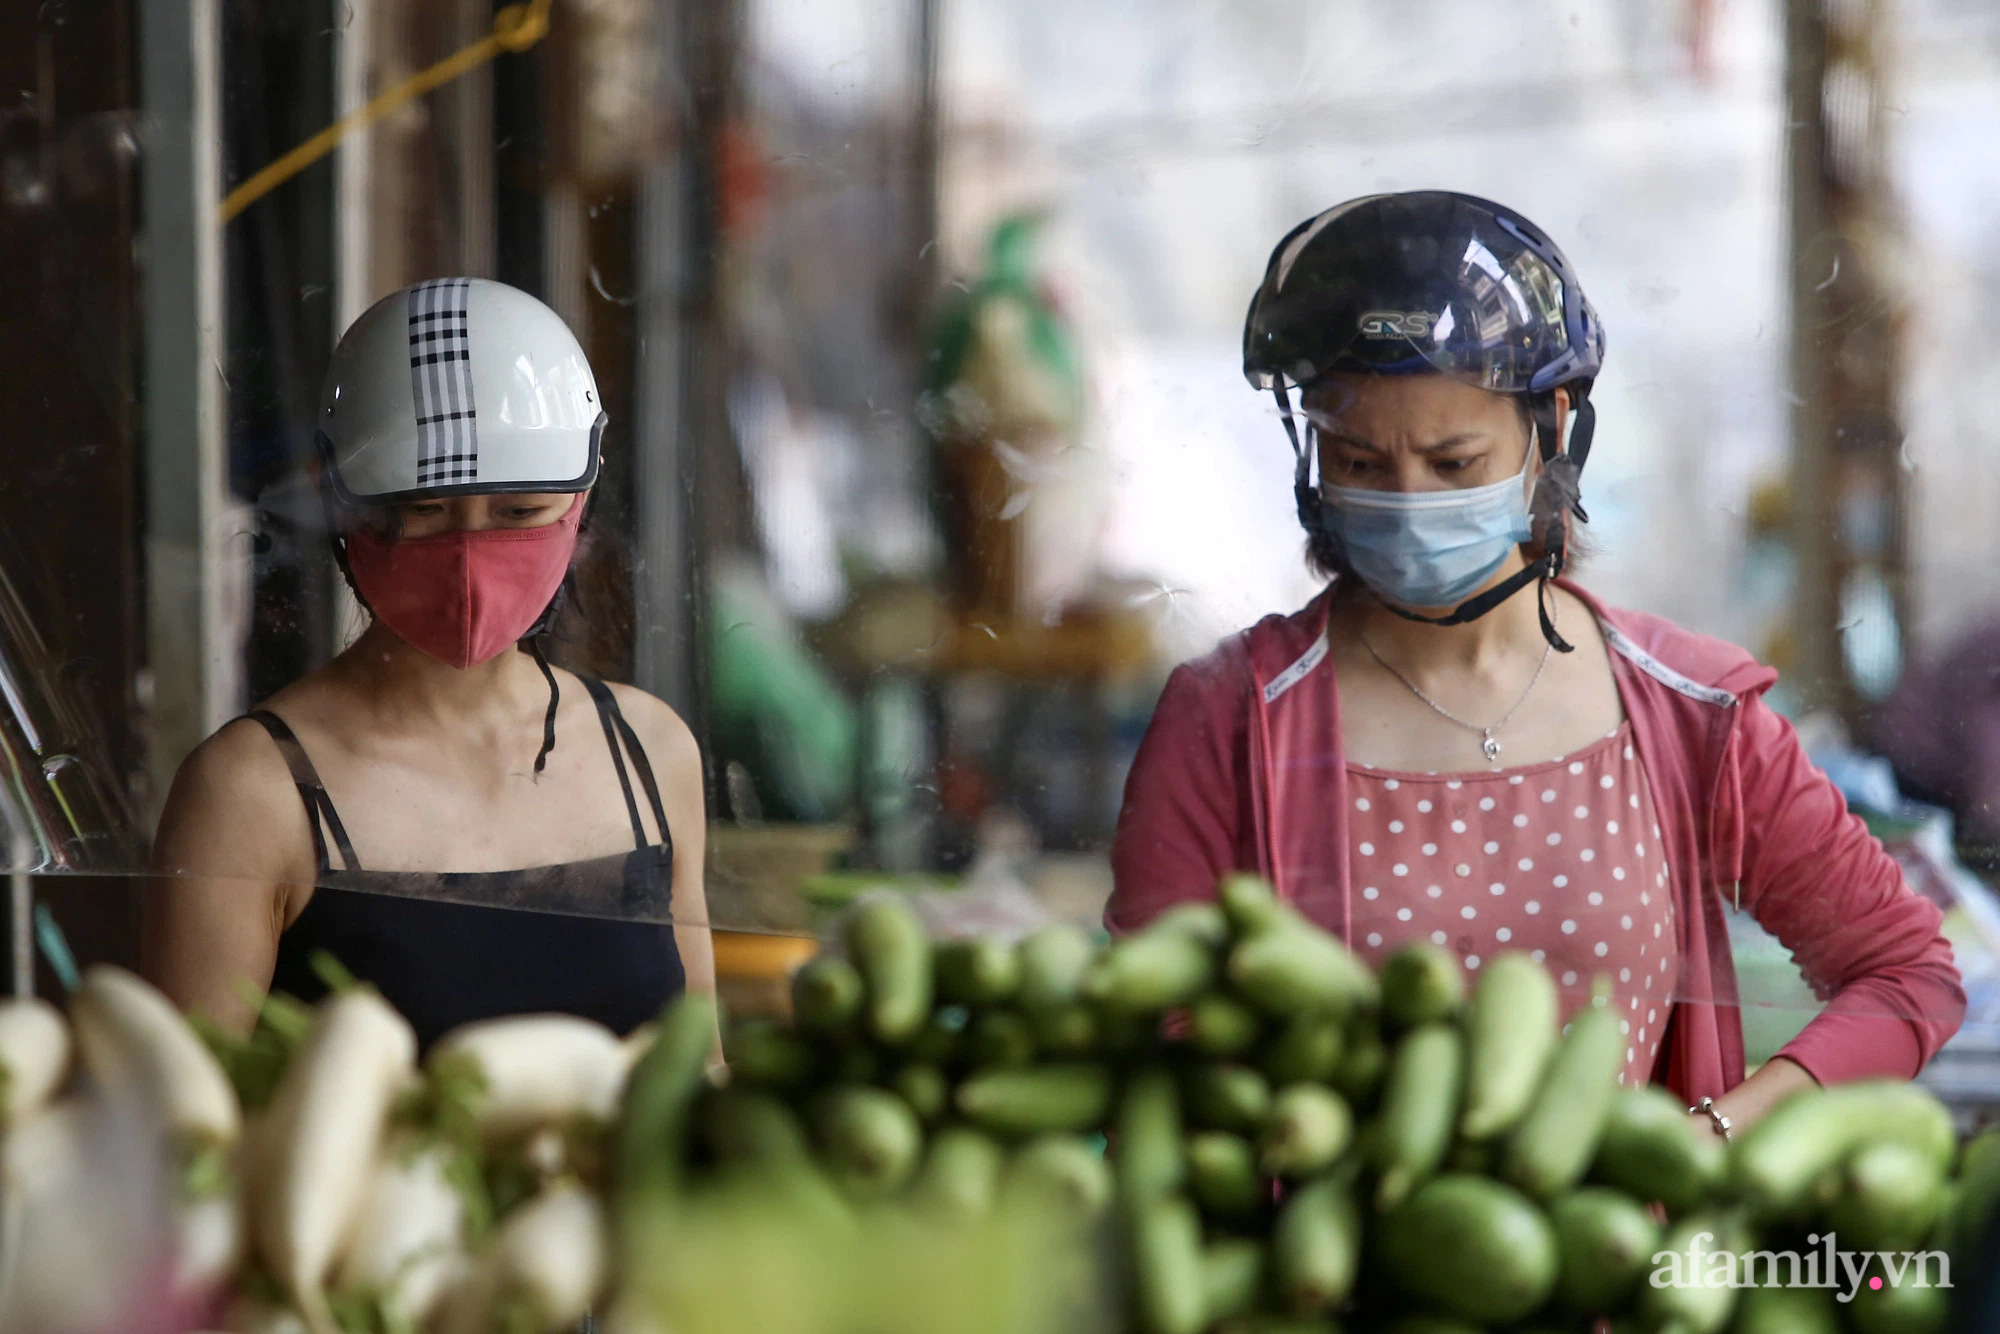 Ấn tượng với khu chợ dân sinh đầu tiên ở Hà Nội quây tấm nilon phòng dịch COVID-19, tiểu thương chia ca đứng bán theo ngày chẵn, lẻ - Ảnh 6.